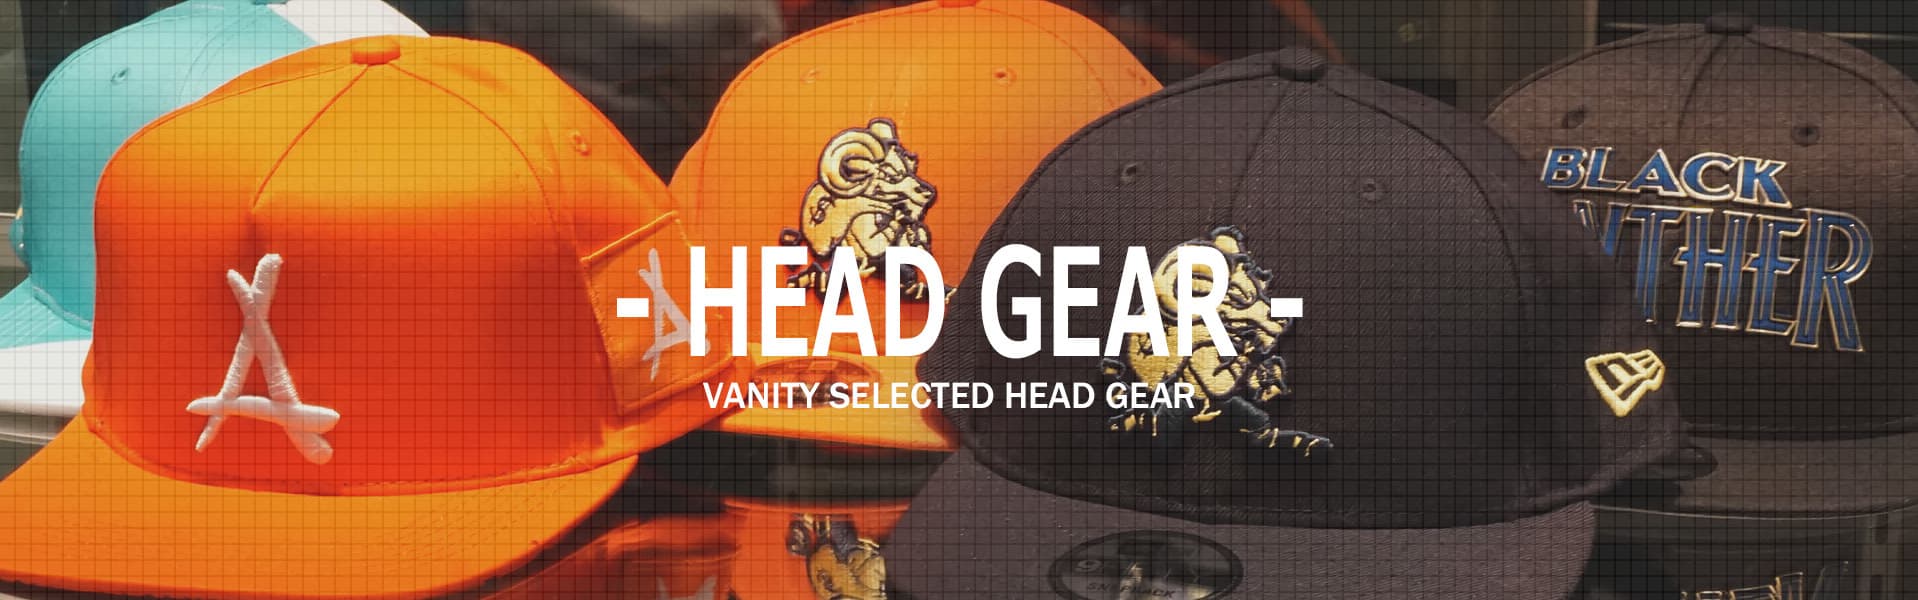 head gear